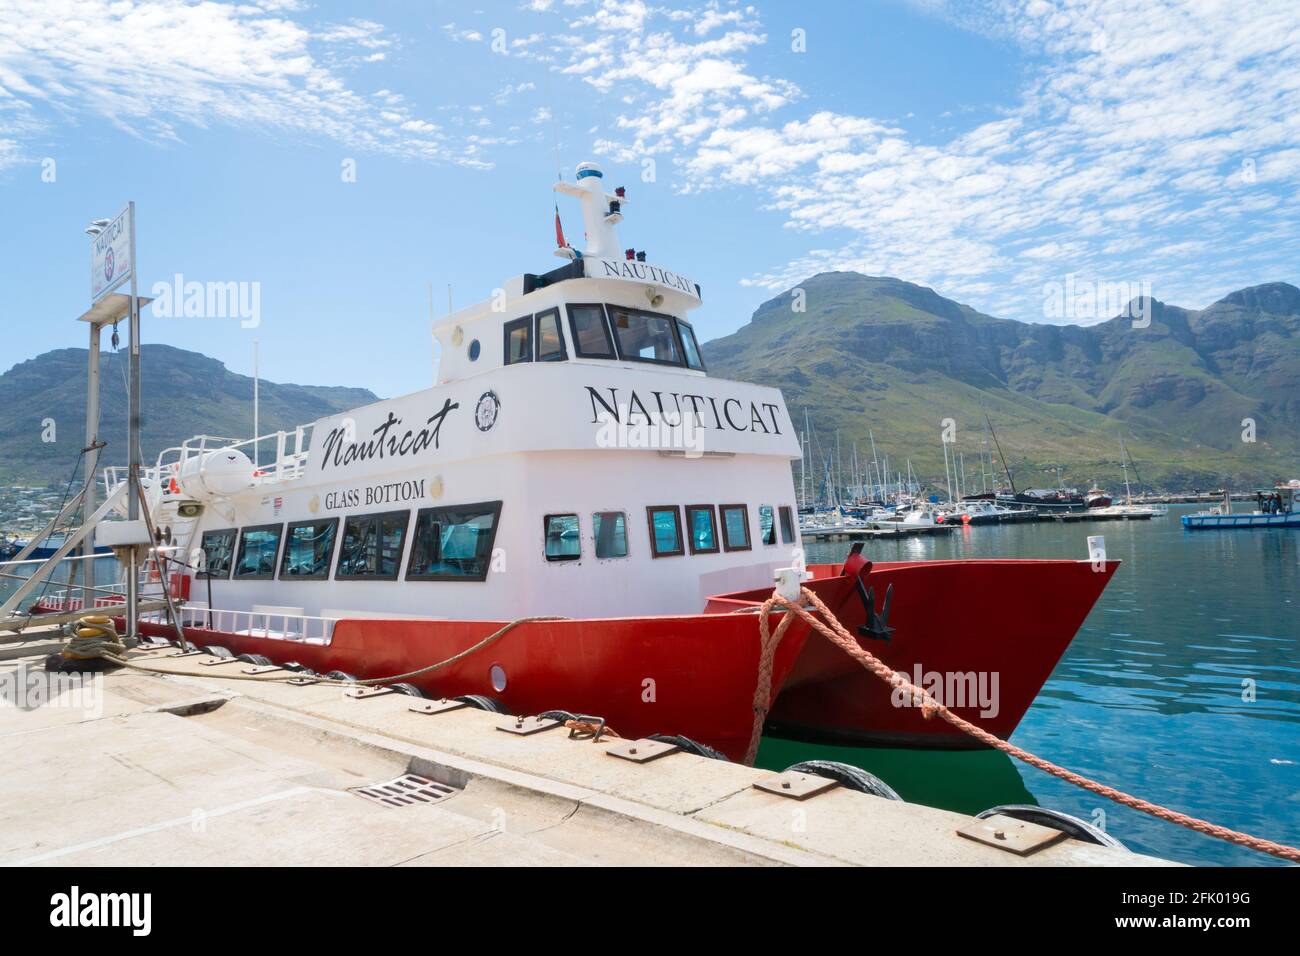 Glasbodenboot, das am Kai im Hafen von Hout Bay in Kapstadt, Südafrika, festgemacht ist, Konzept für Tourismus und Reisen in Afrika Stockfoto